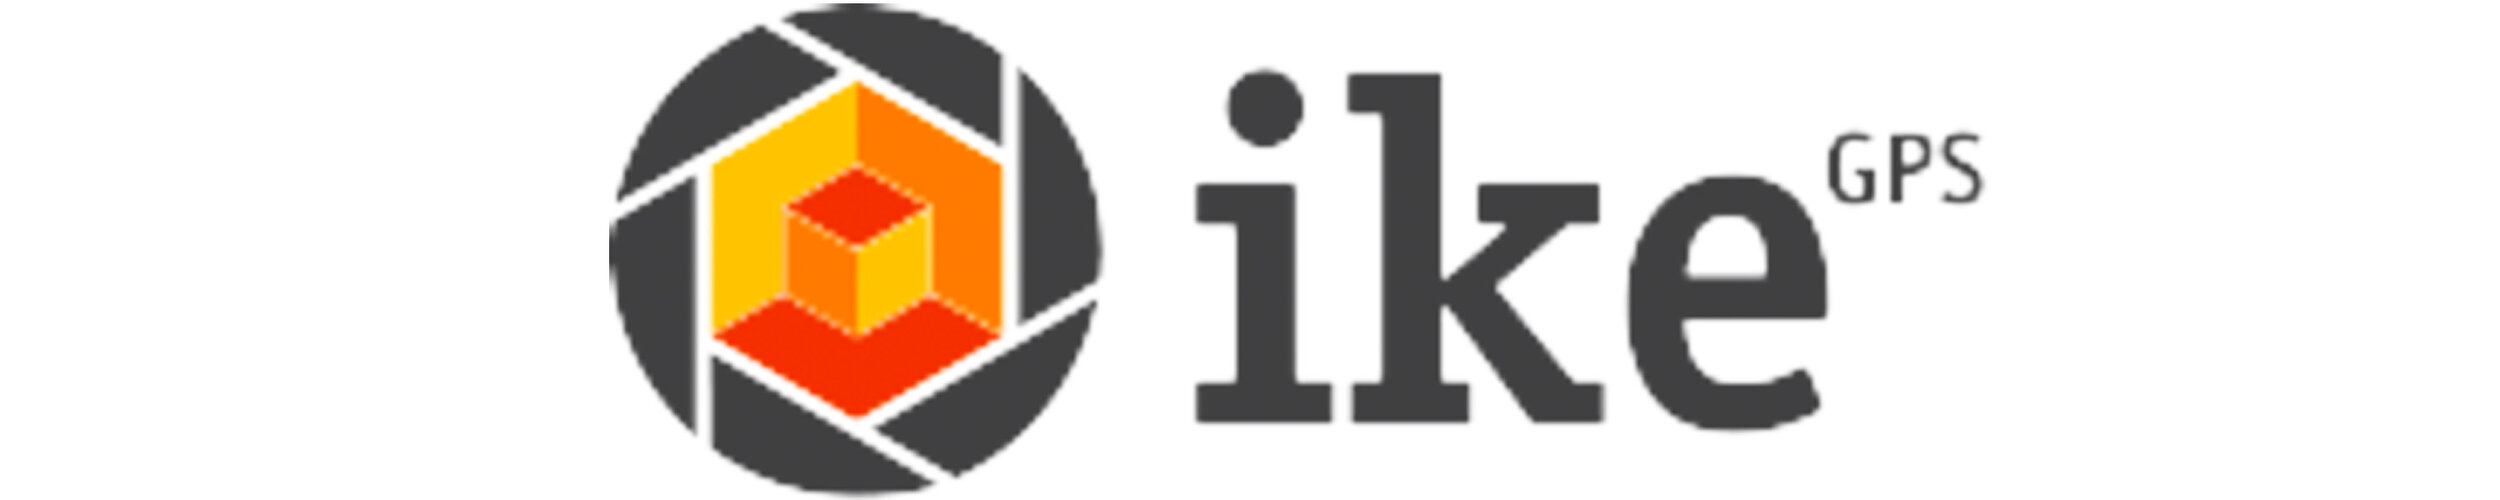 ikegps logo.jpg